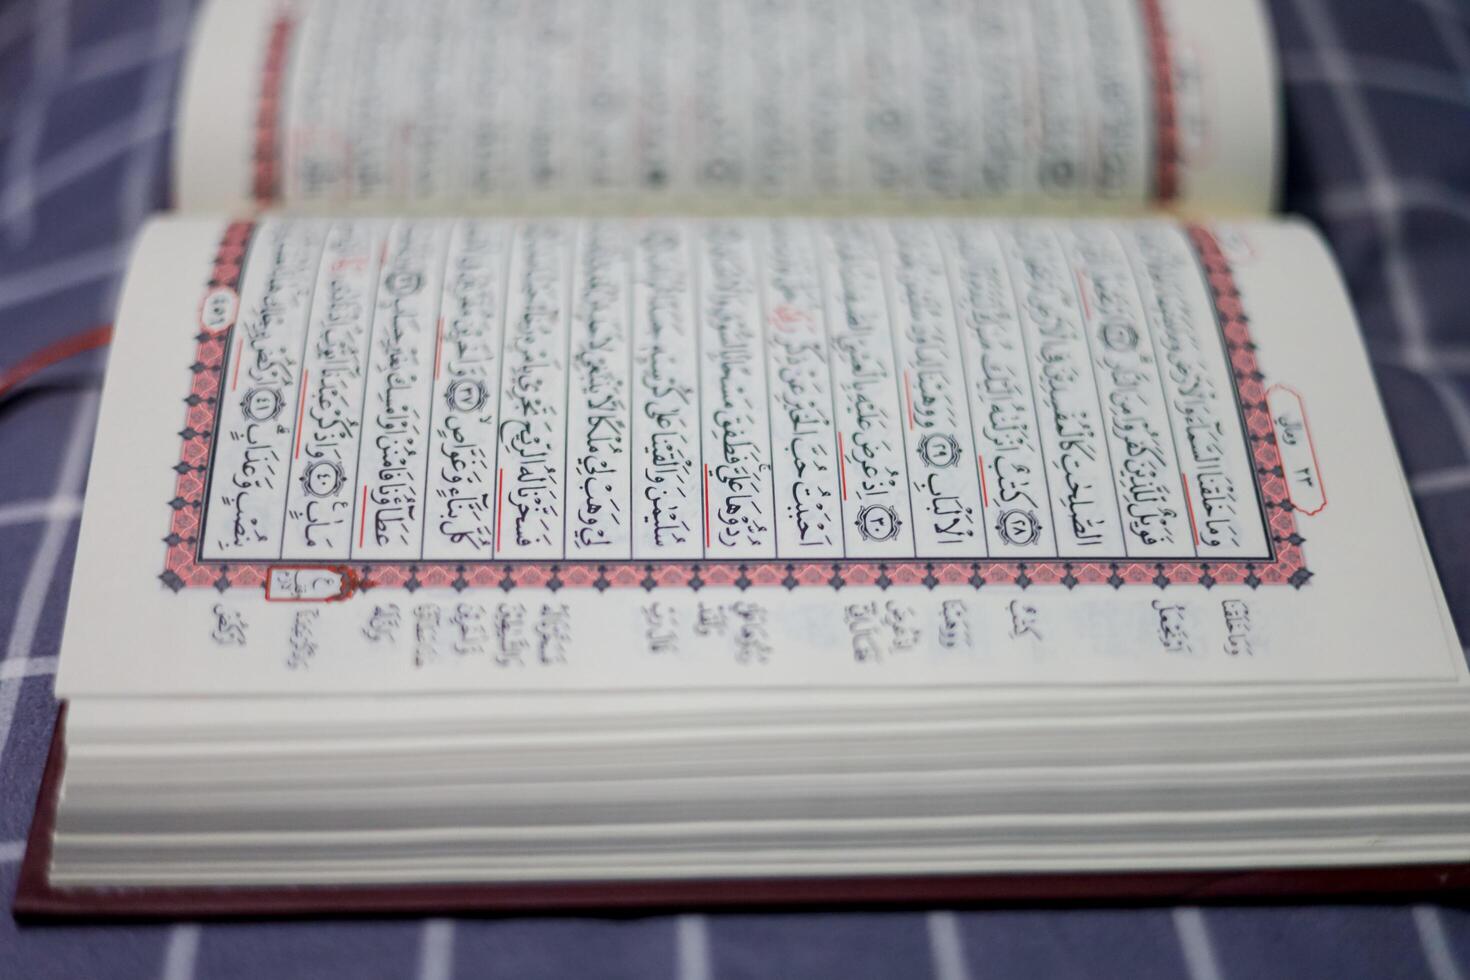 Koranen, al Koranen, islamic bakgrund för eid al-fitr eid al-adha. öppen sida av al-Koranen. islamic begrepp foto